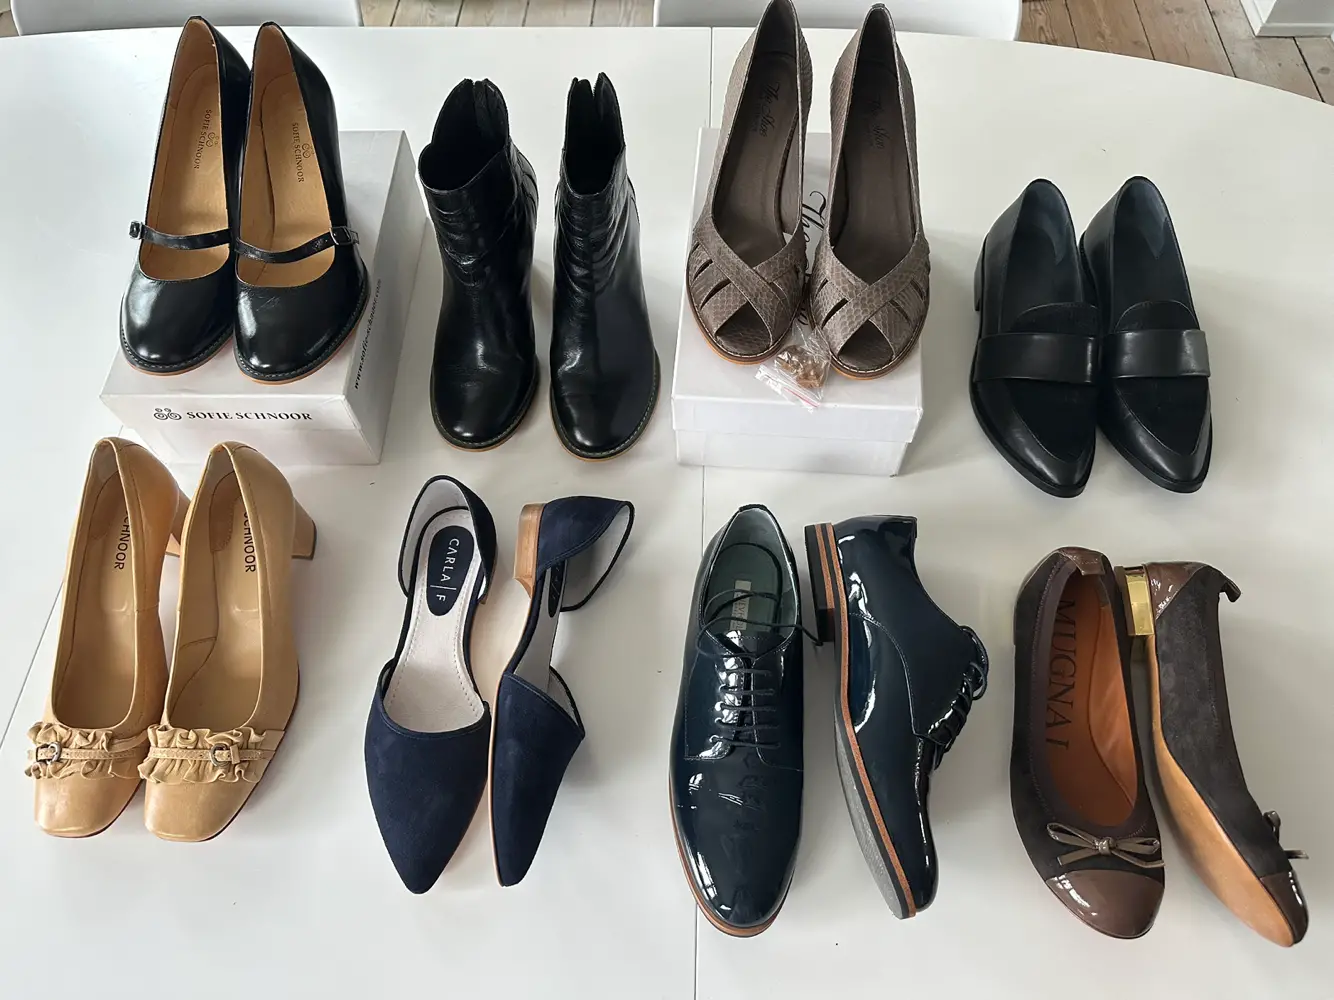 Framework historie blæk Køb Sofie Schnoor Høj hælede sko i størrelse 40 af Rikke Sofie på Reshopper  · Shop secondhand til børn, mor og bolig